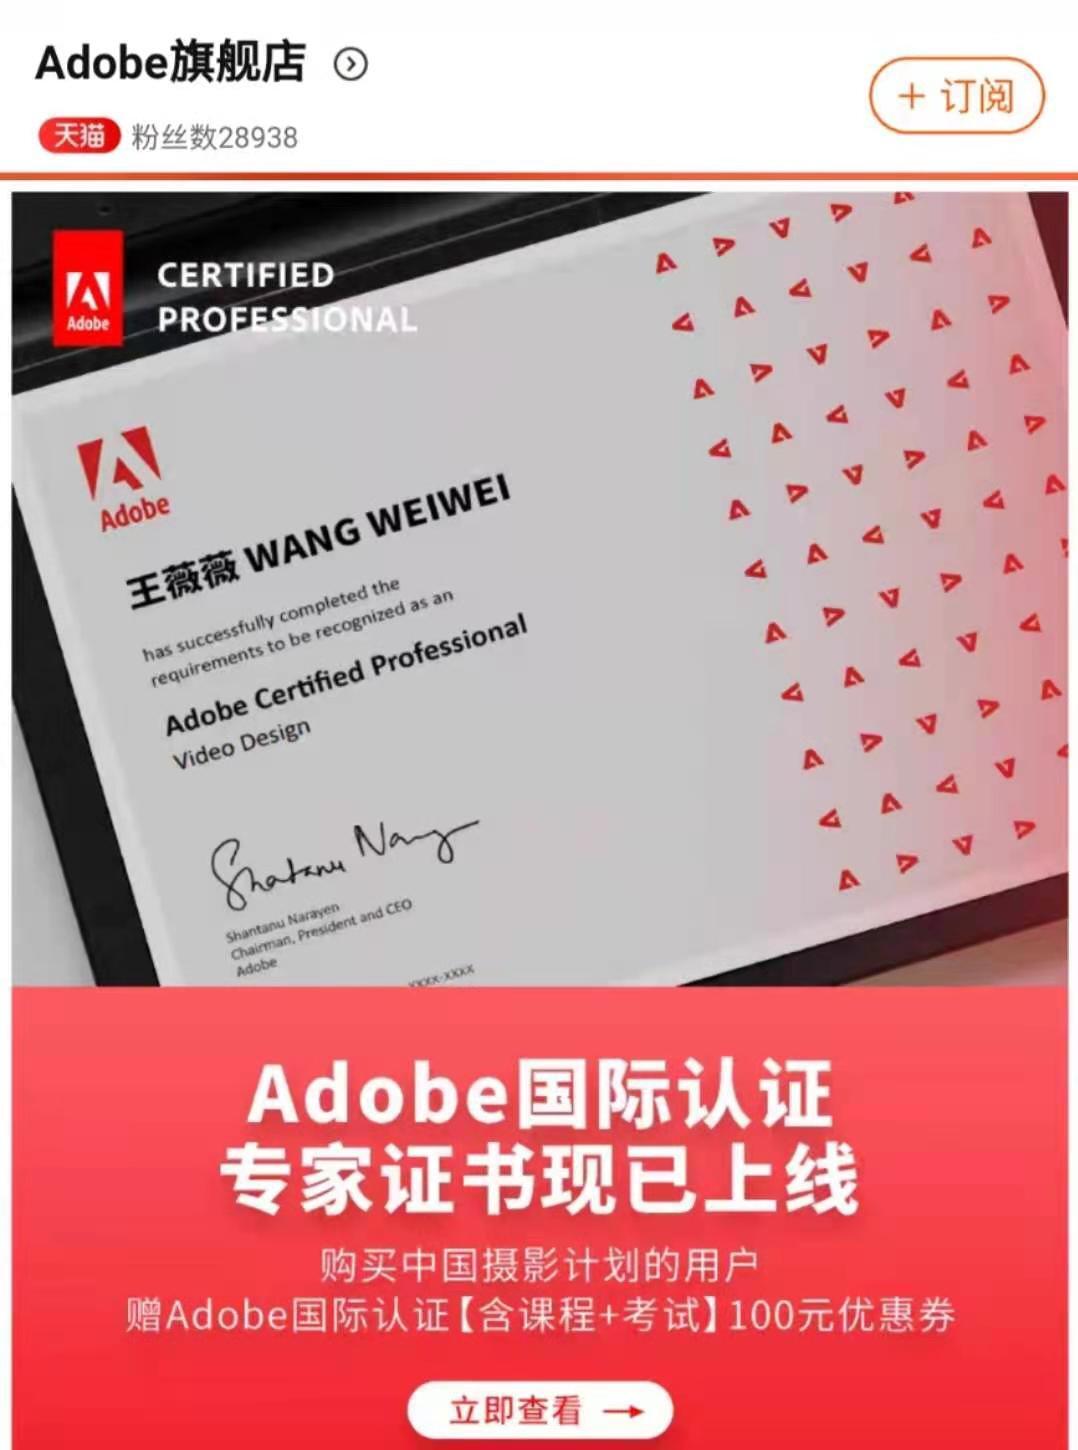 Adobe官方旗舰店，现已上线“Adobe国际认证”专家证书